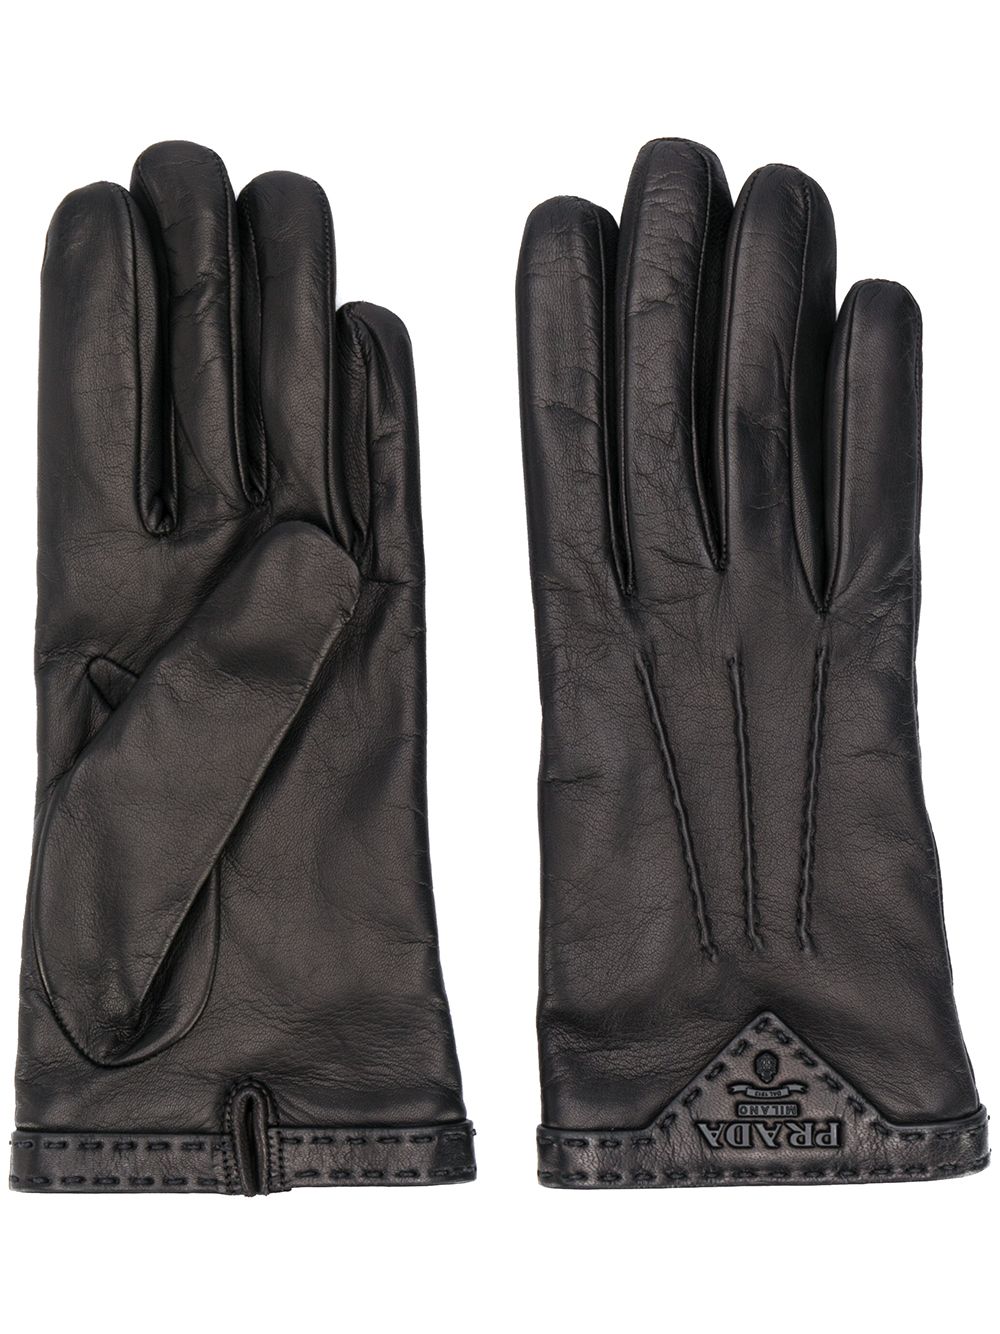 Prada stitched logo plaque gloves - Black von Prada